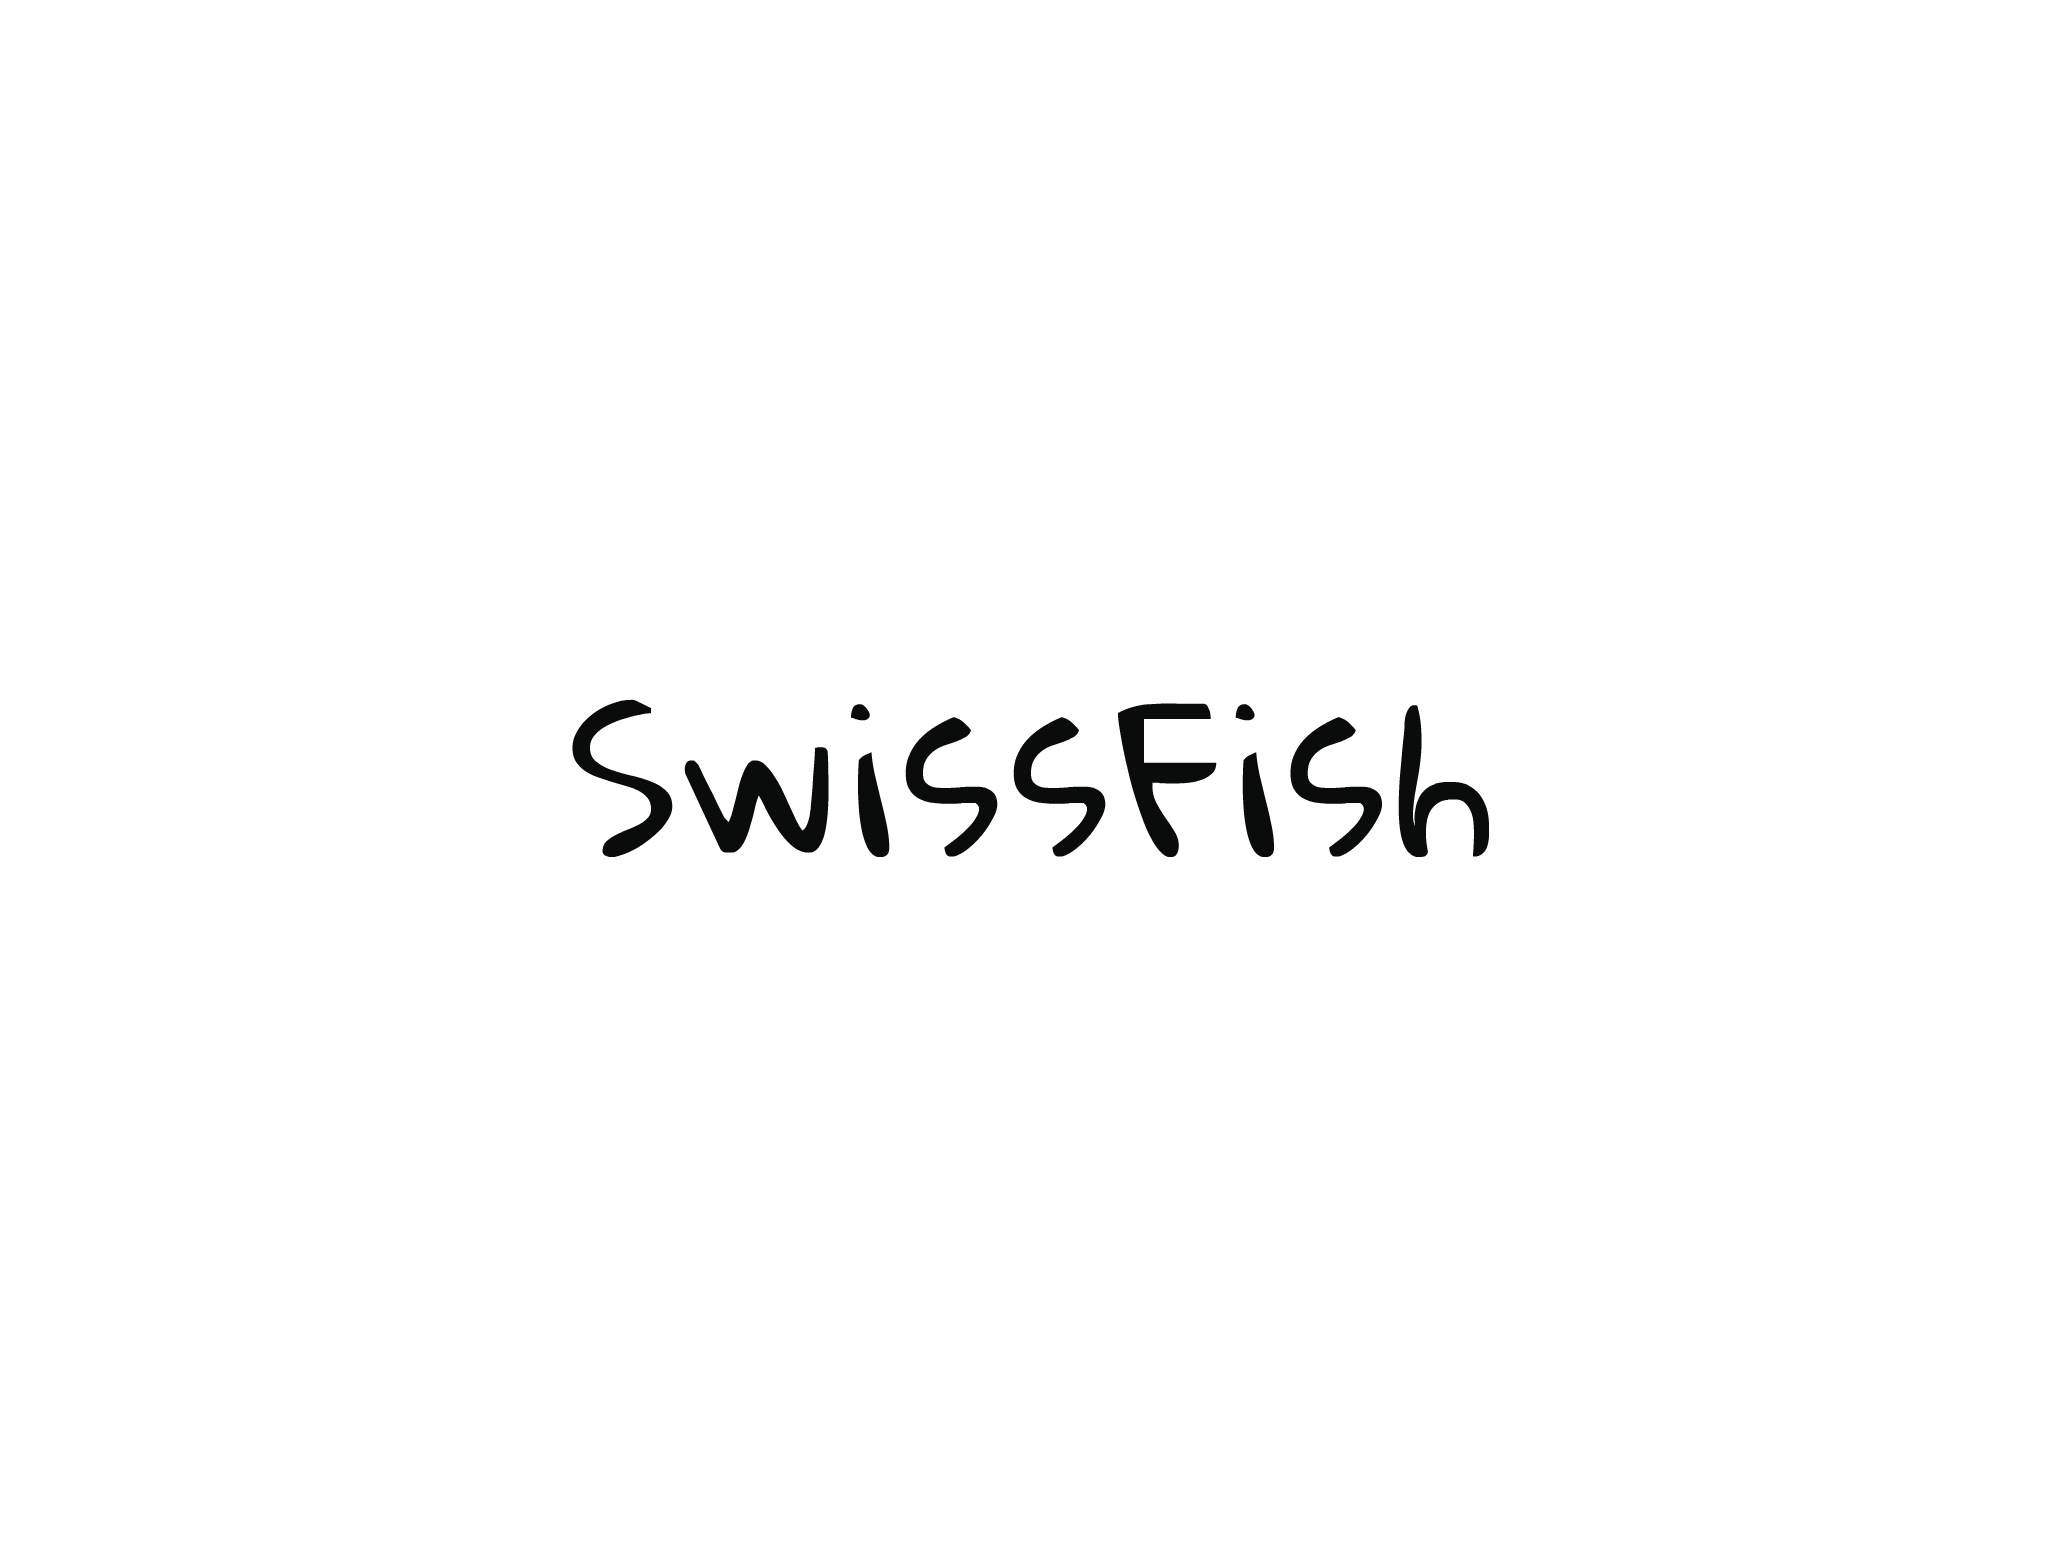 SwissFishAgency